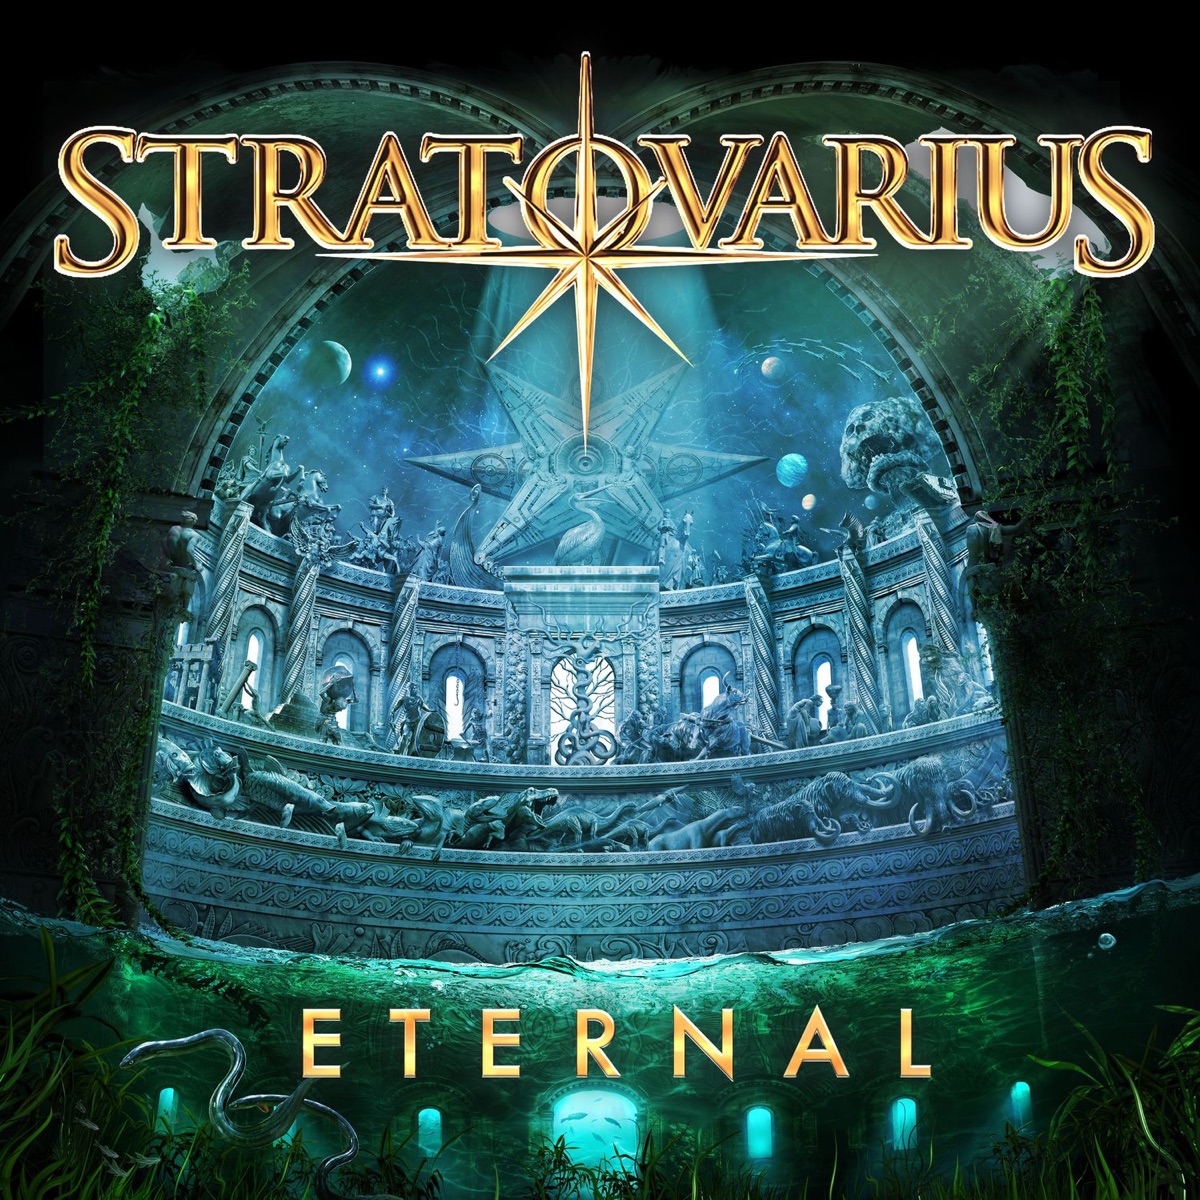 Polaris  Álbum de Stratovarius 